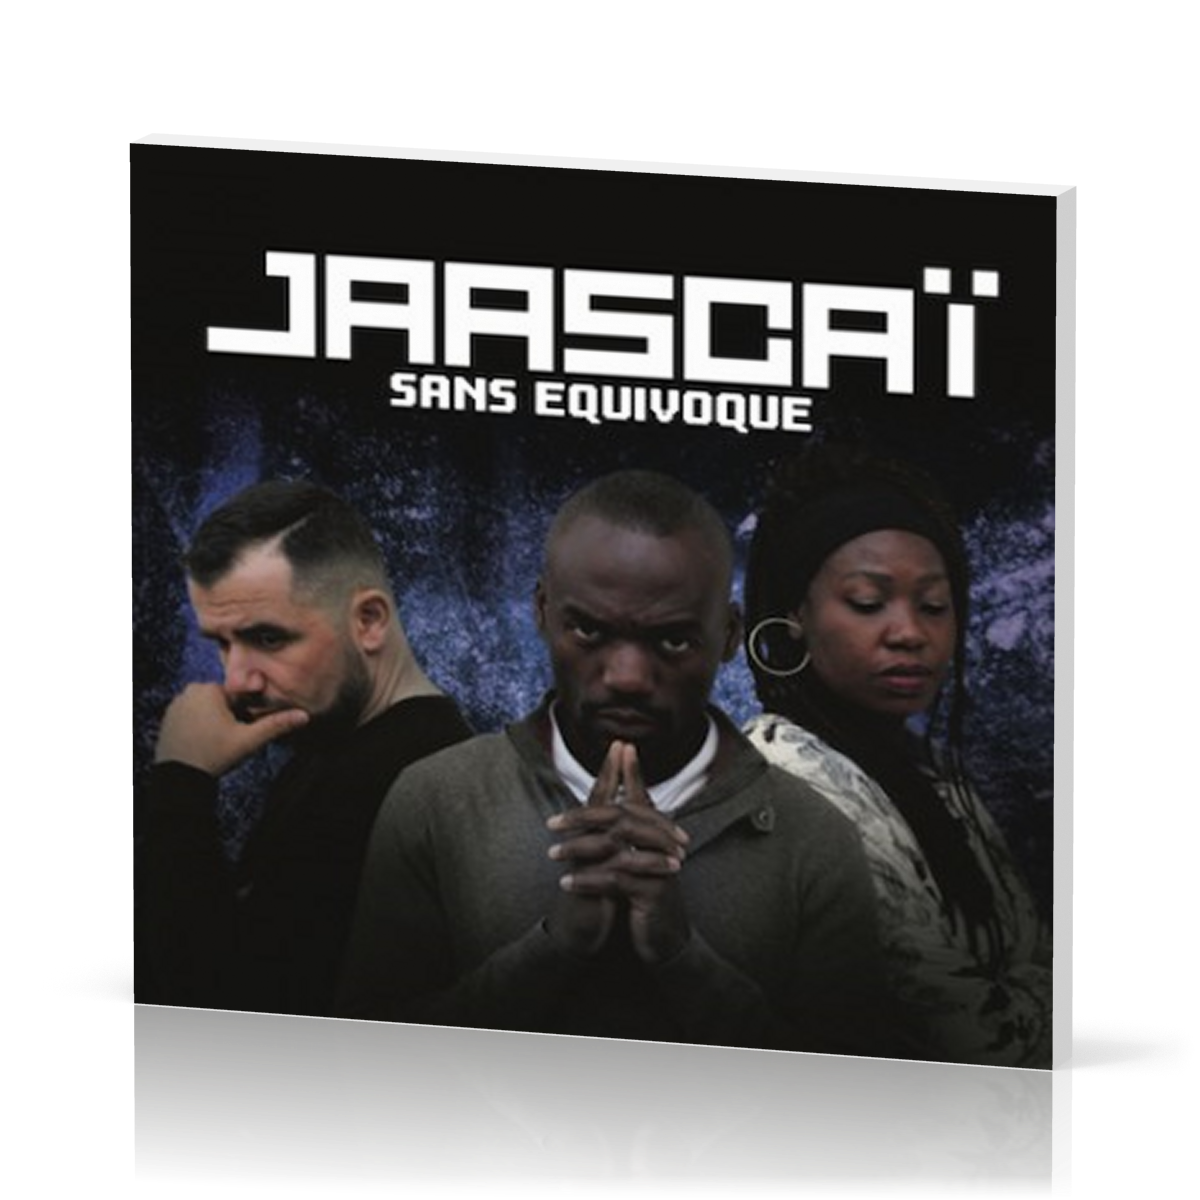 Jaascaï - Sans Equivoque